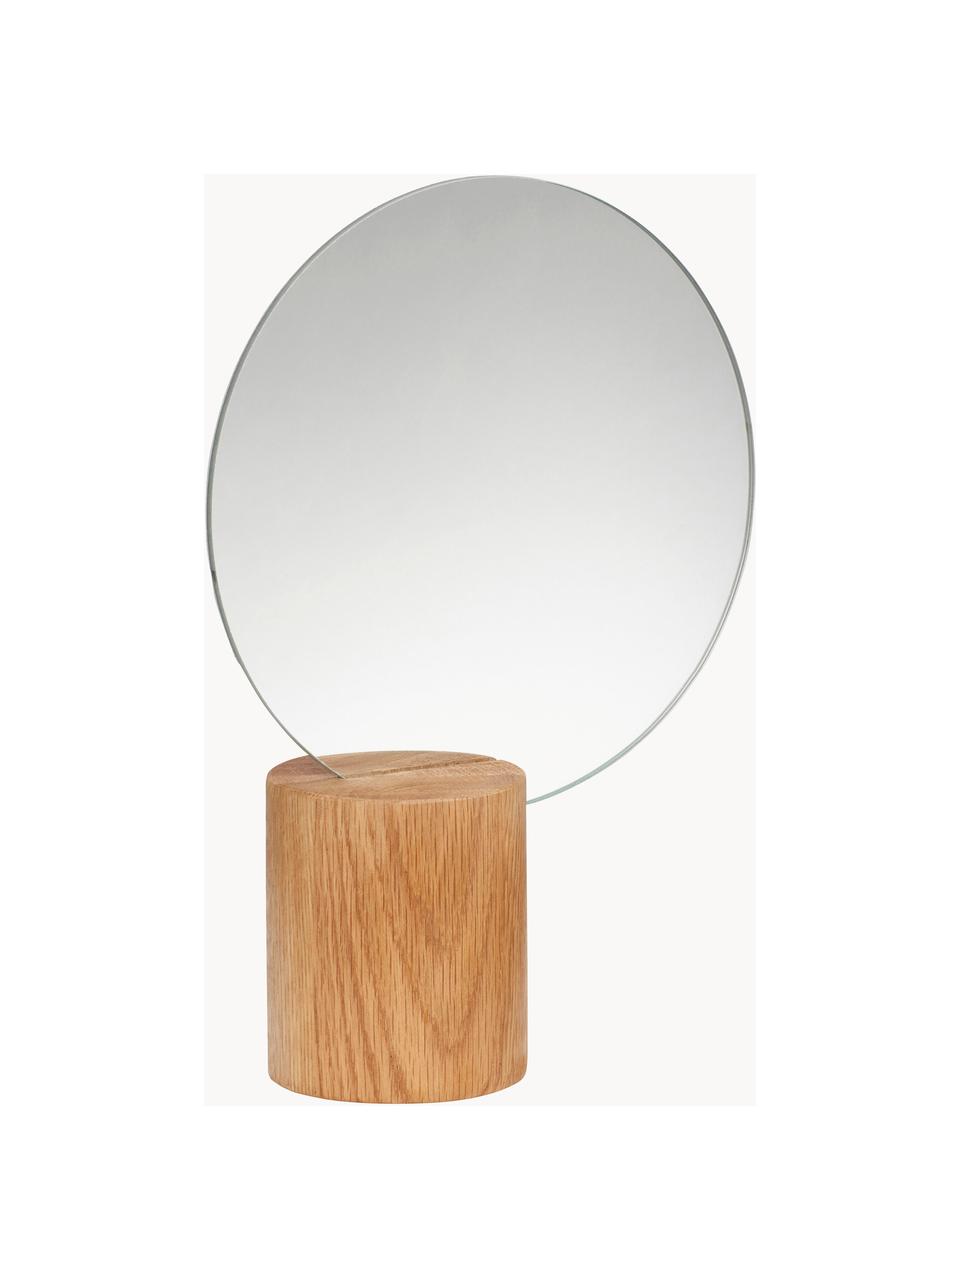 Runder Dekospiegel Edge mit Eichenholzfuss, Spiegelfläche: Spiegelglas Dieses Produk, Eichenholz, Ø 21 x H 28 cm